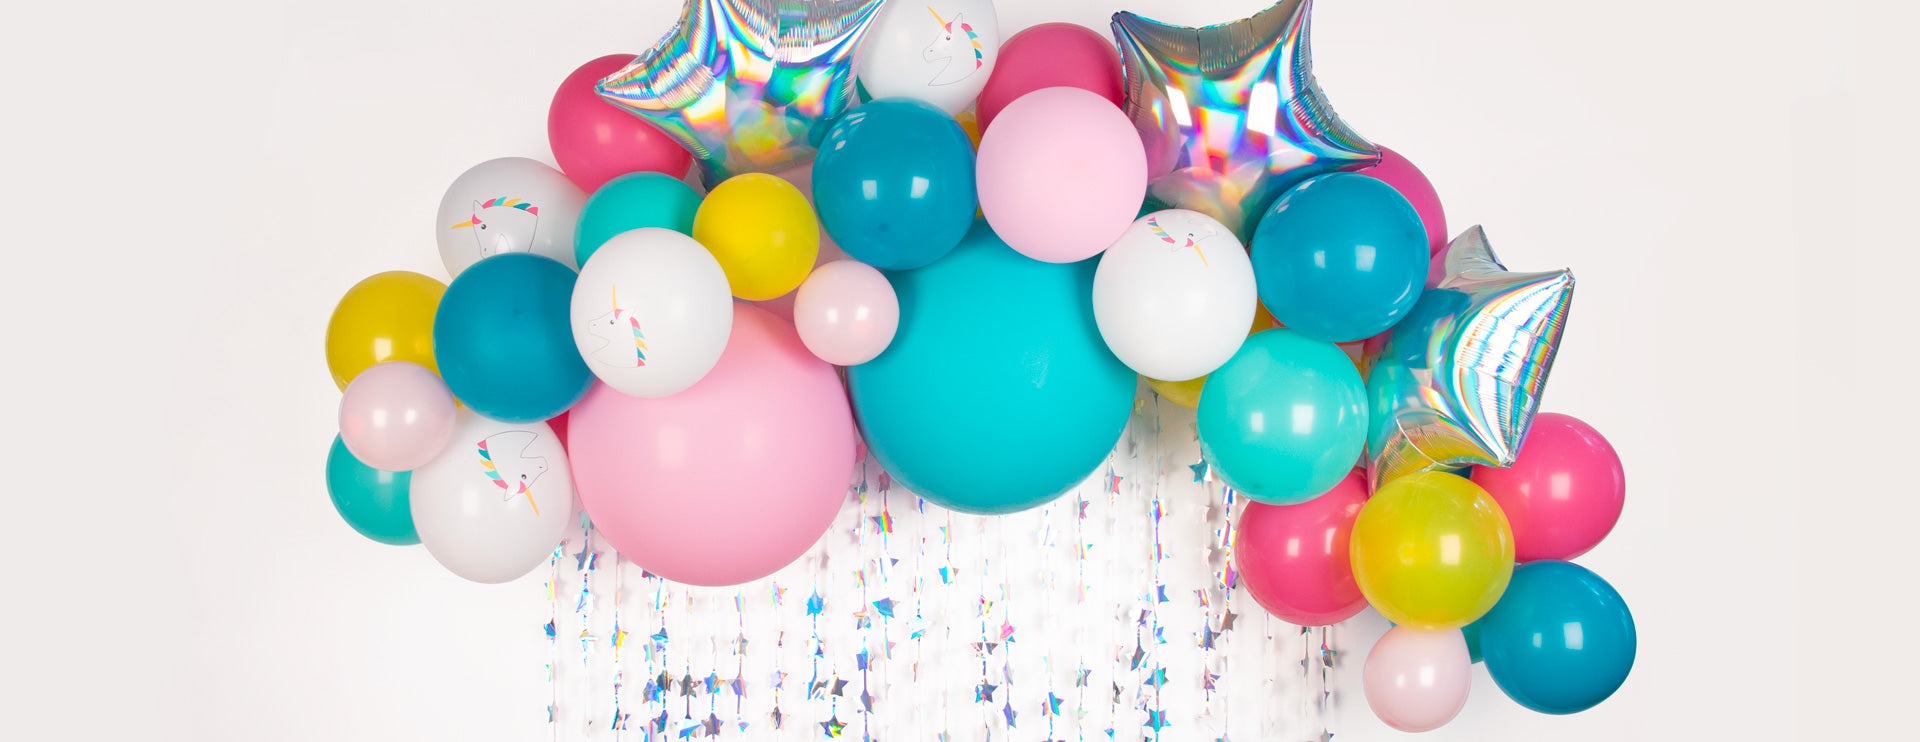 Comment faire une arche de ballons tropicale pour un anniversaire ?